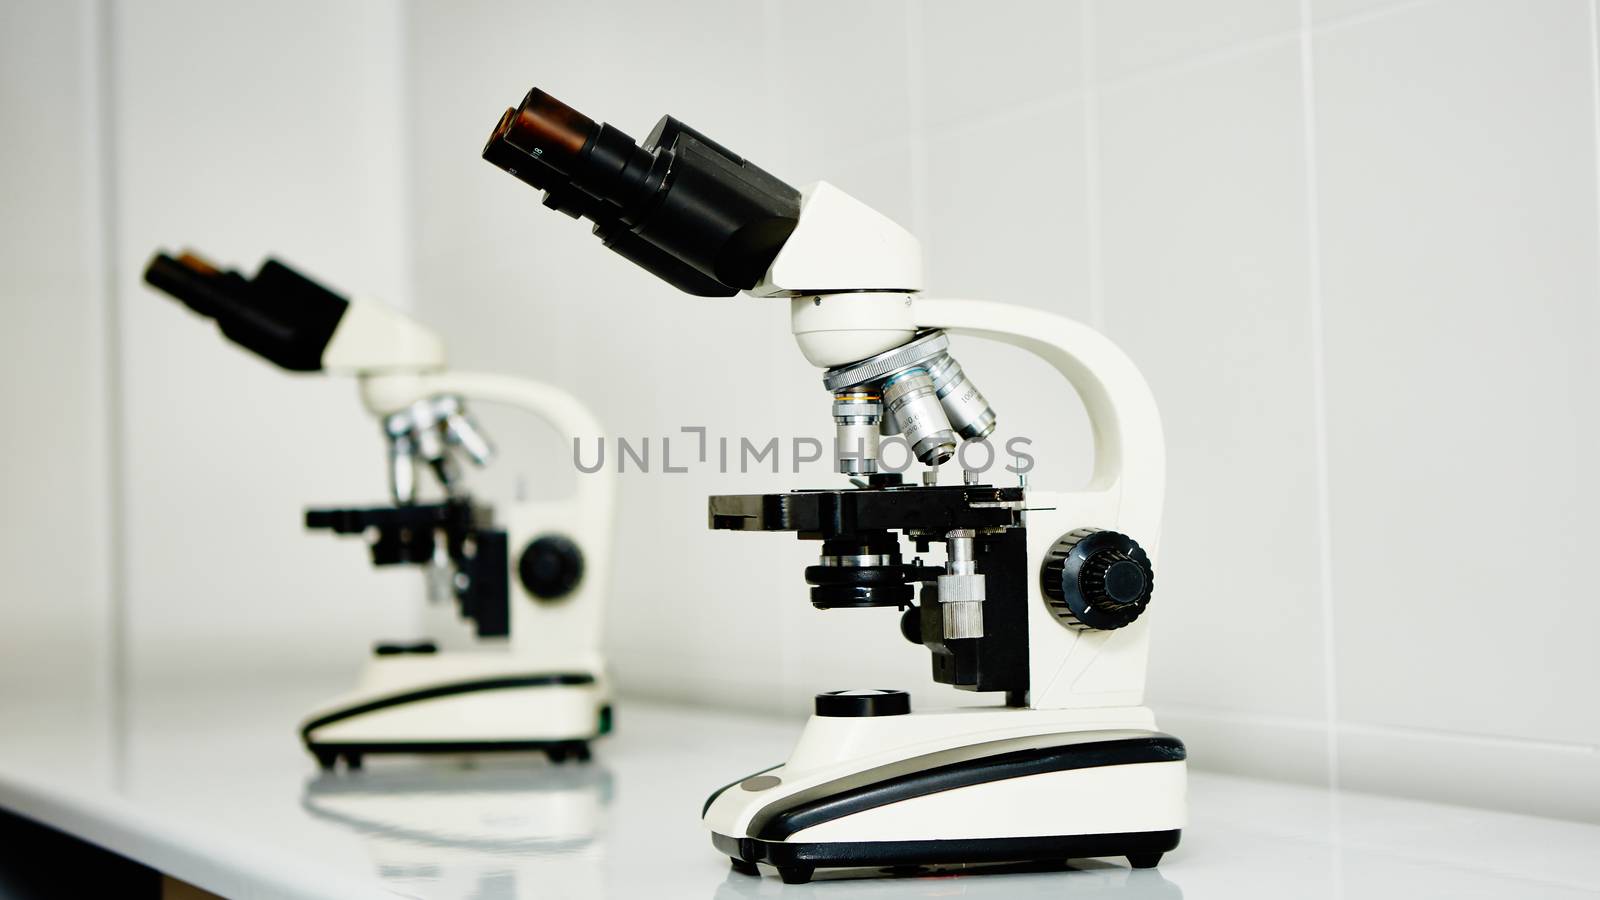 Laboratory microscope lens by sarymsakov